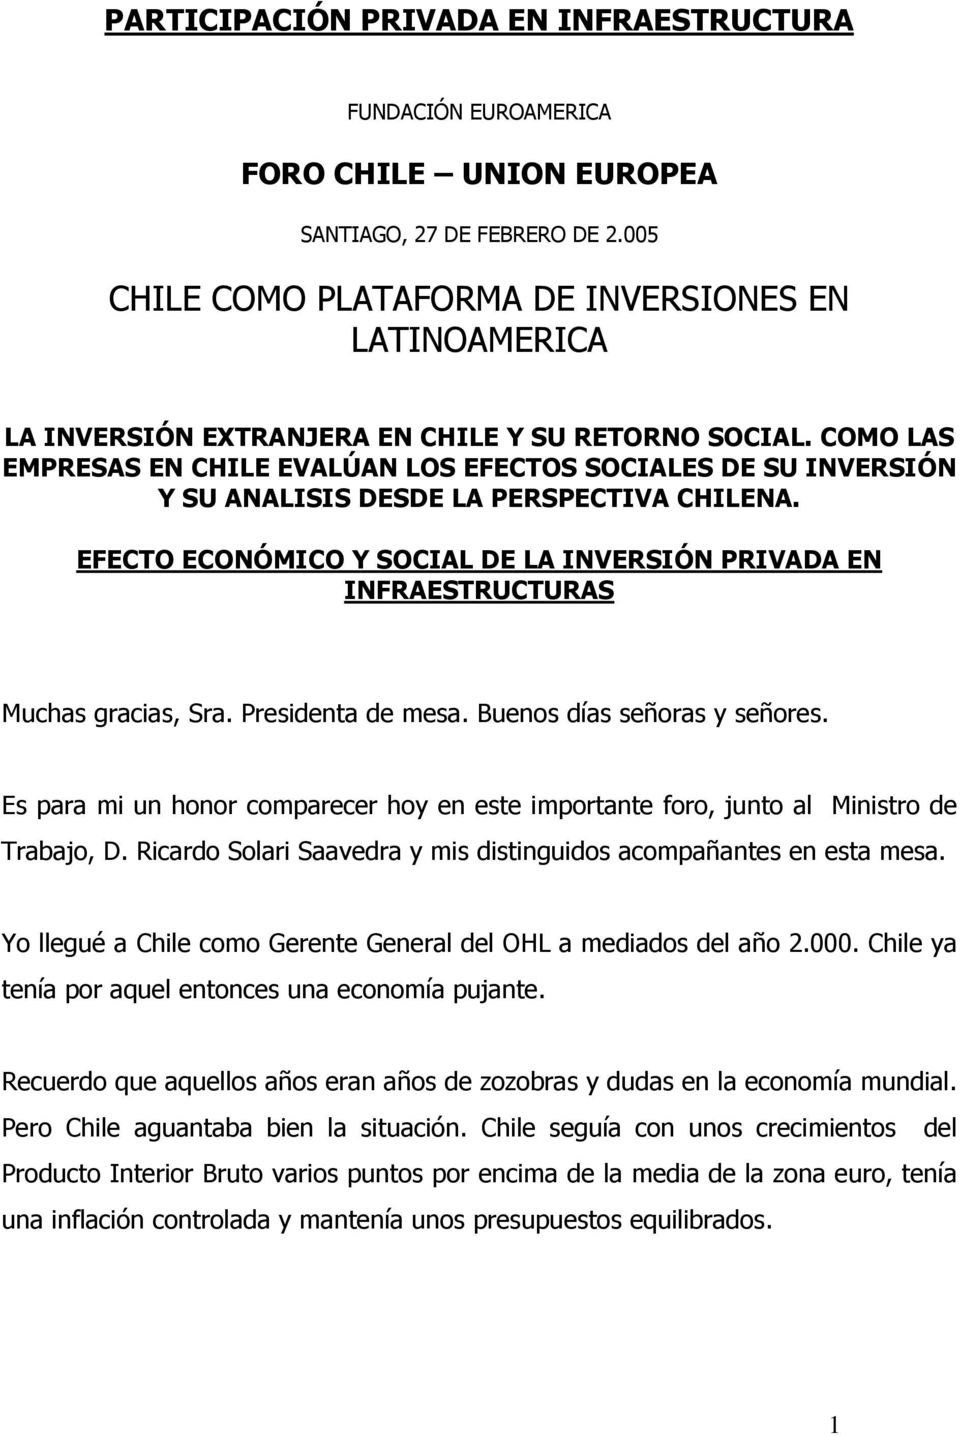 COMO LAS EMPRESAS EN CHILE EVALÚAN LOS EFECTOS SOCIALES DE SU INVERSIÓN Y SU ANALISIS DESDE LA PERSPECTIVA CHILENA.